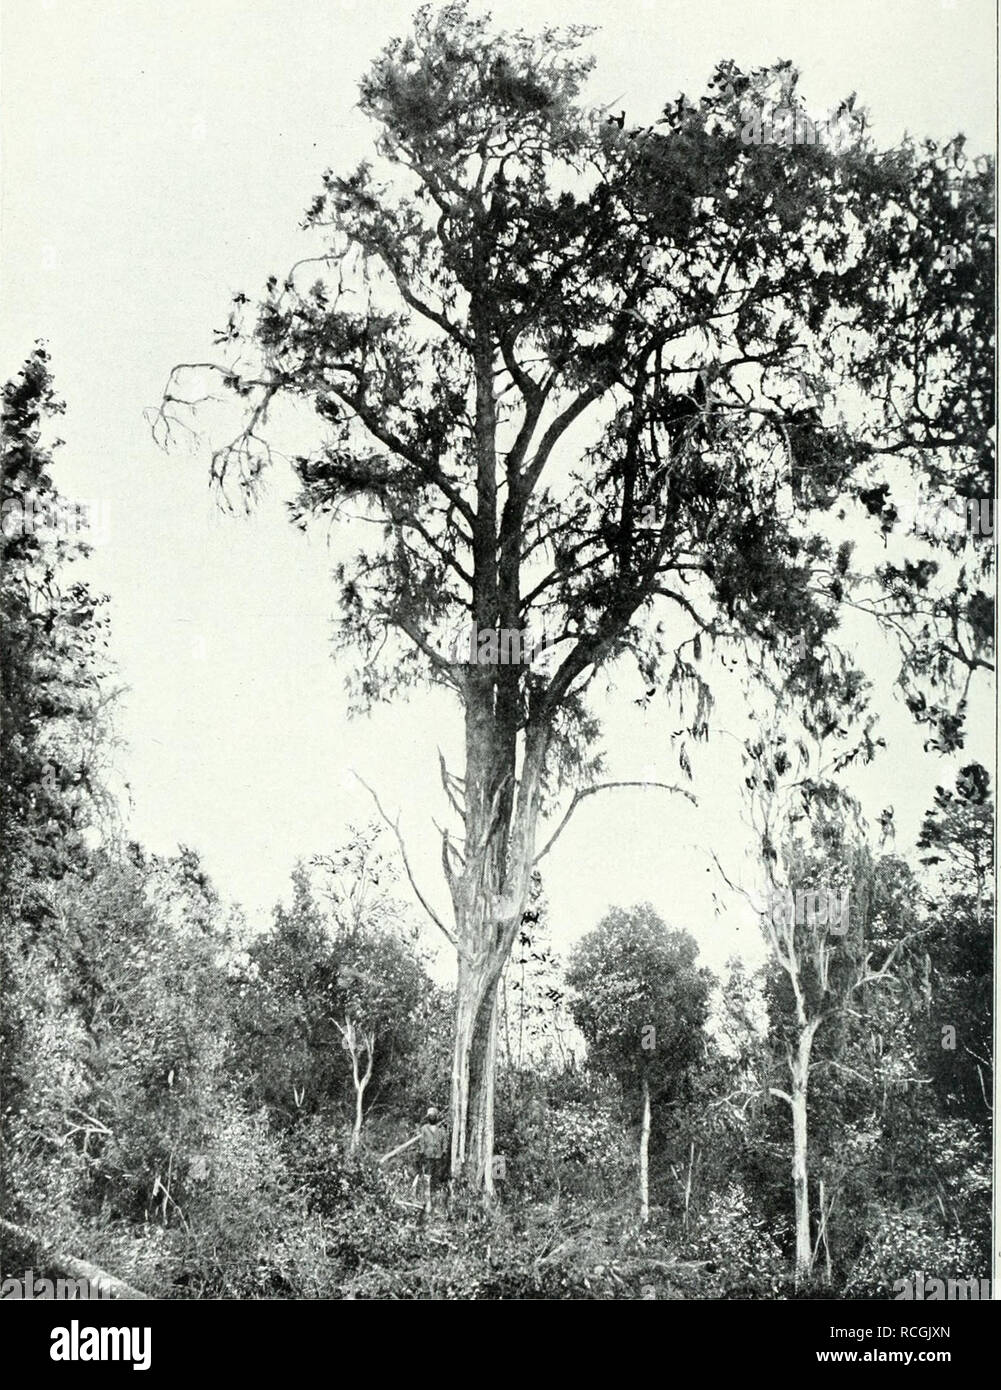 Arundinaria alpina K. Schum. (Bambou africain) : dessin fini des sections  de la tige et de la pousse avec feuilles